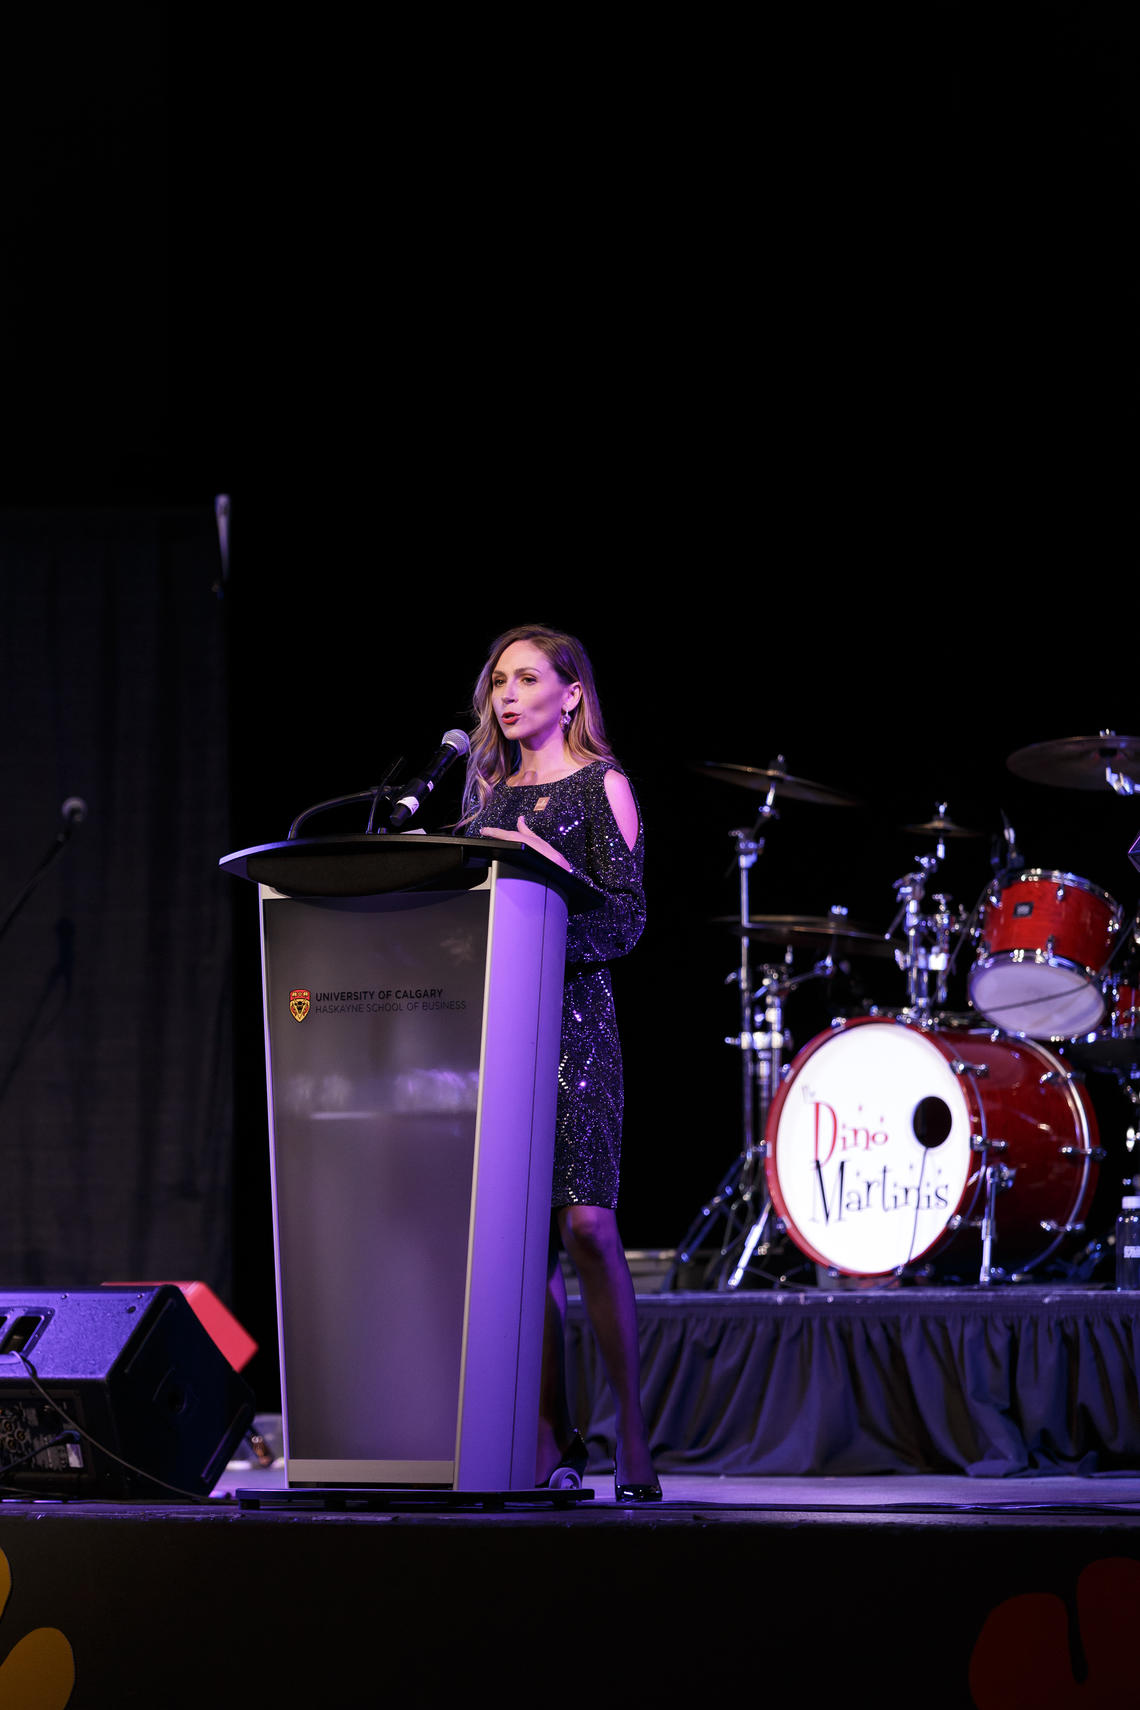 Alumna Breanne Everett speaks at the Haskayne's 50th event.